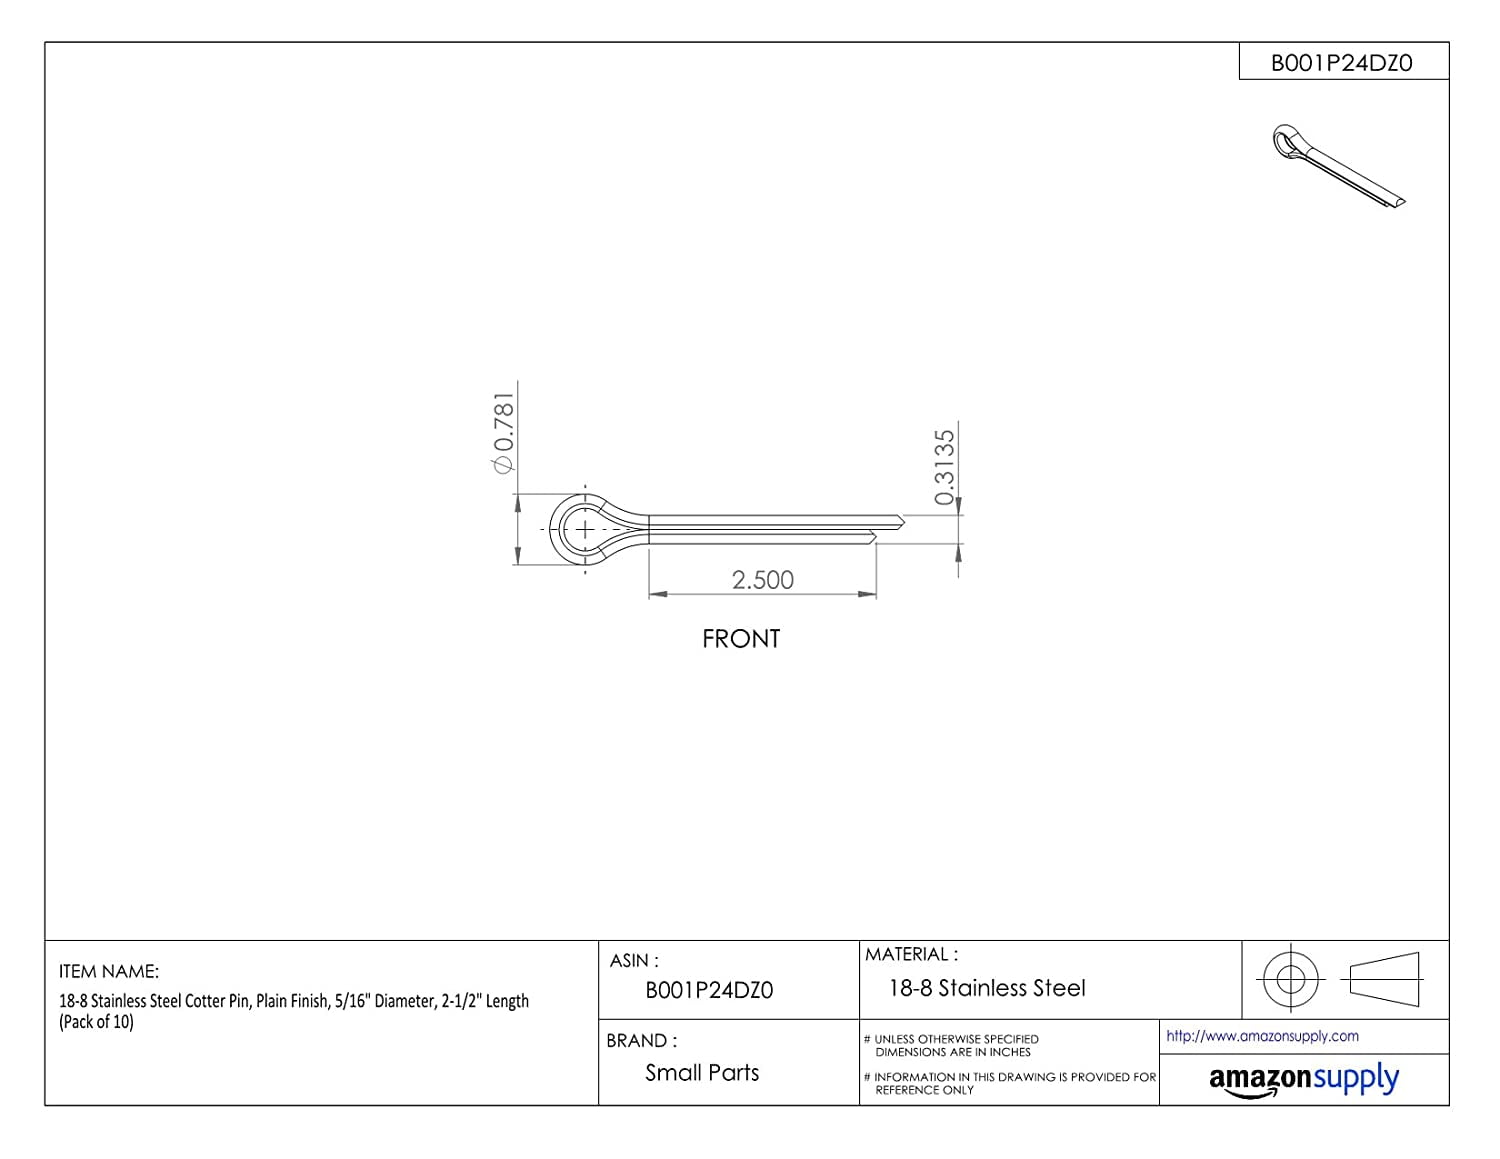 Pack 18-8 Stainless Steel Cotter Pin 5/64" Diameter 1" Length Plain Finish 